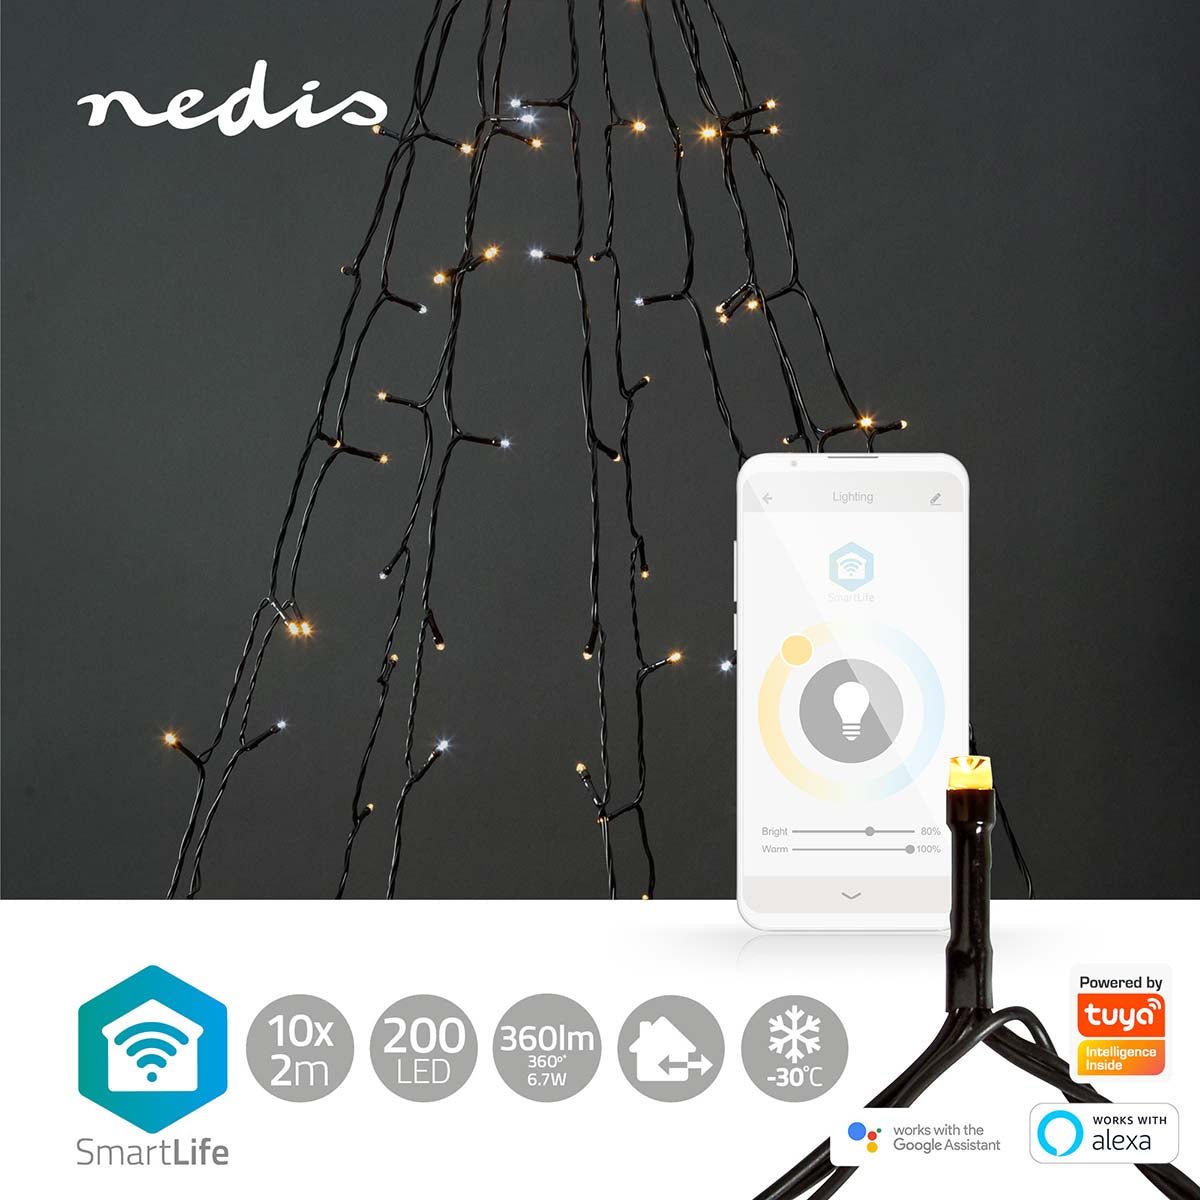 Luzes Nedis Wi-FI branco quente e frio iluminação inteligente para um Natal acolhedor. Controle via Wi-Fi para uma experiência festiva personalizável.